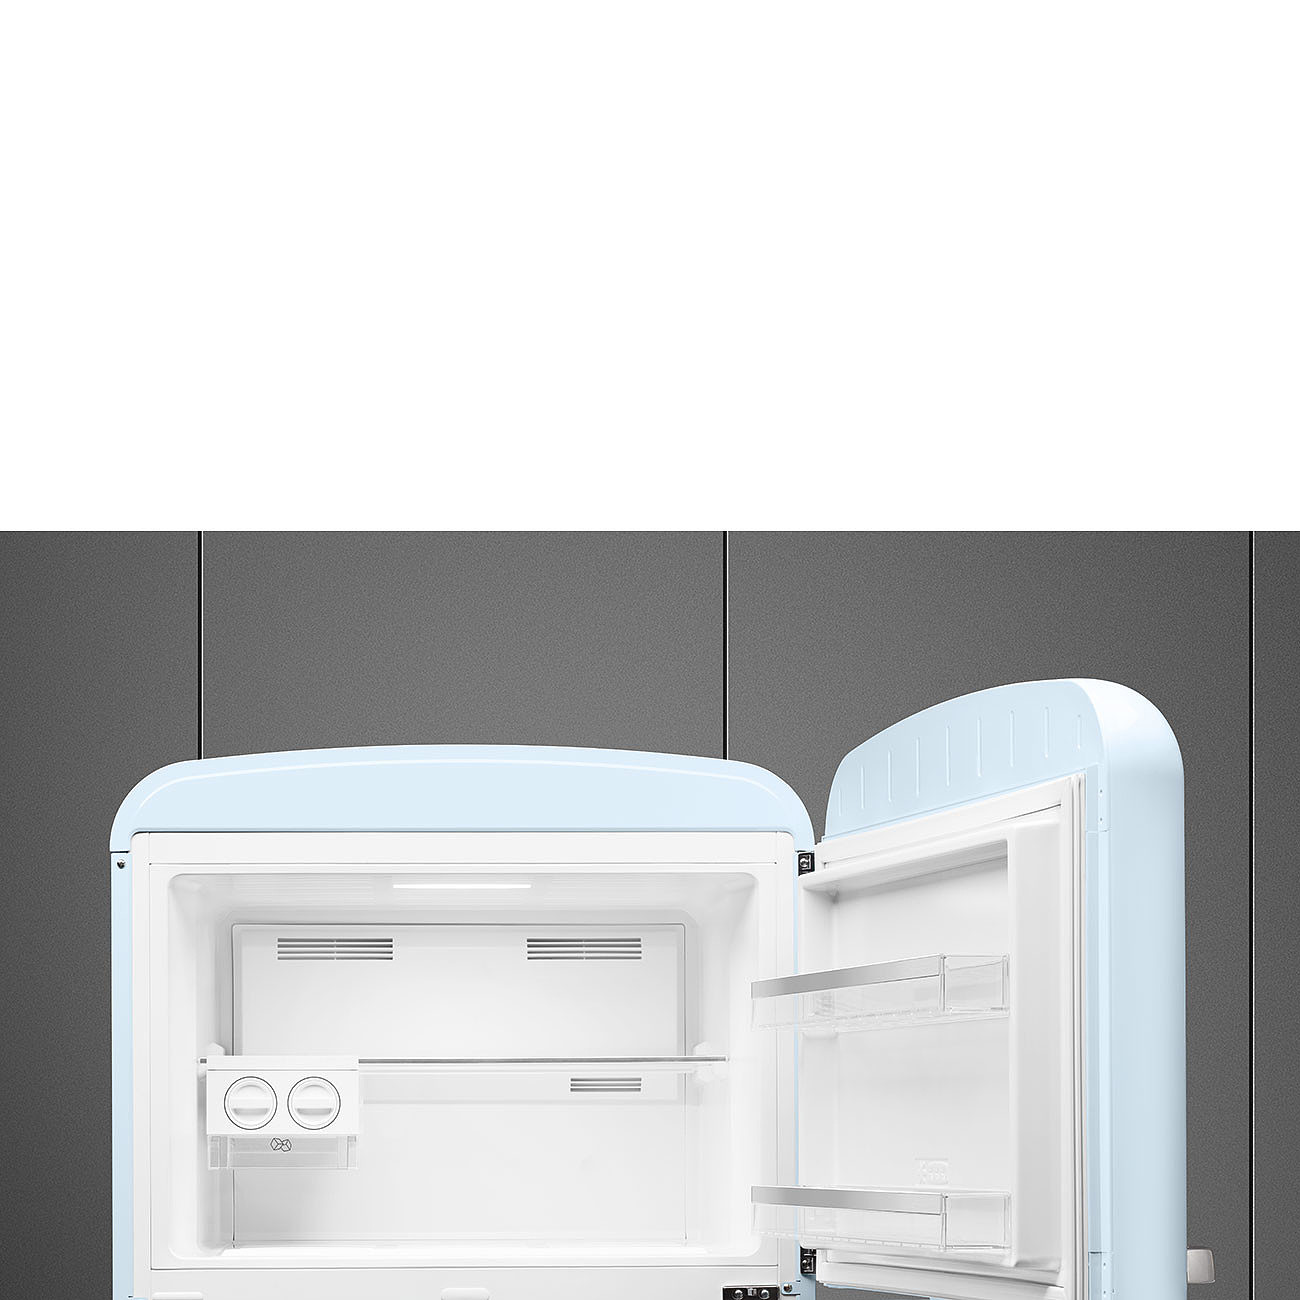 SMEG FAB50RPB5  Отдельностоящий двухдверный холодильник, стиль 50-х годов, 80 см, пастельный голубой, No-frost, петли справа